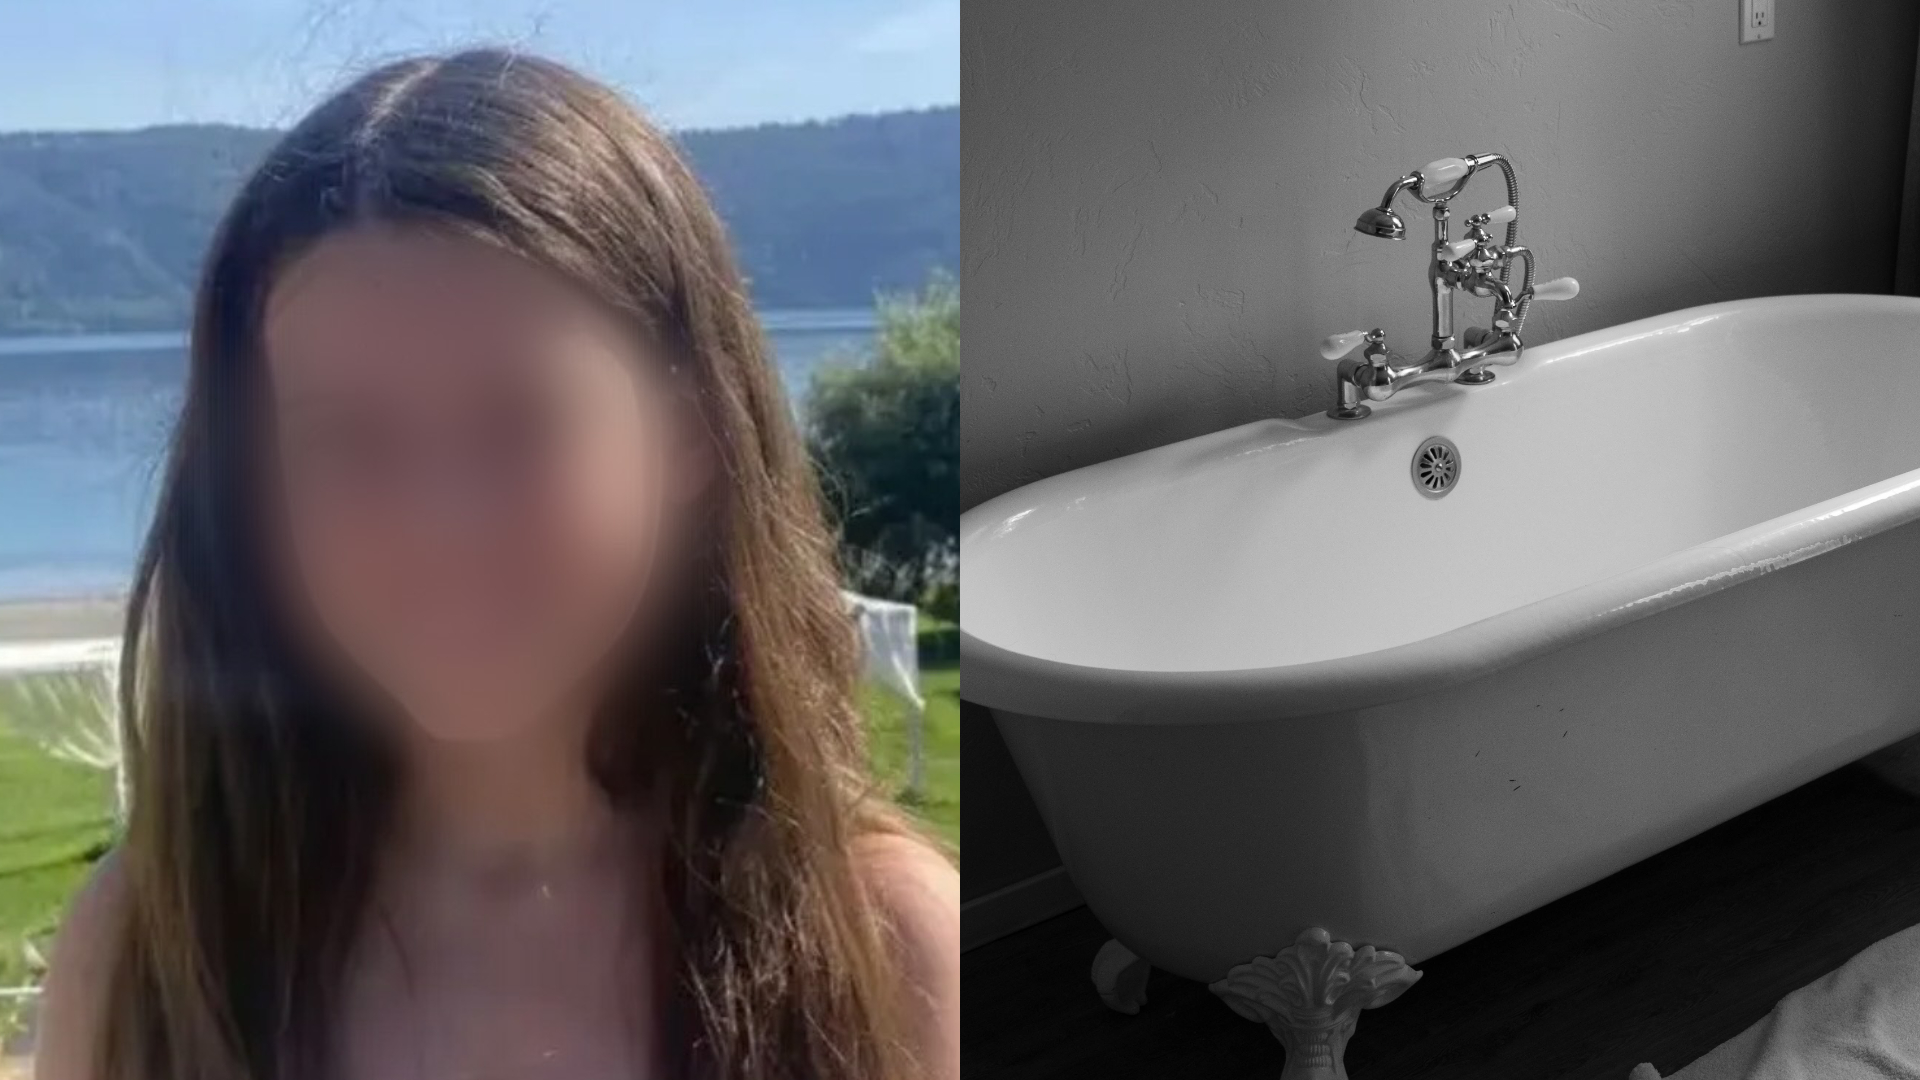 Menina de 12 anos contrai grave infecção ao usar banheira de hidromassagem, descobre diagnóstico raro e fica incapaz de andar